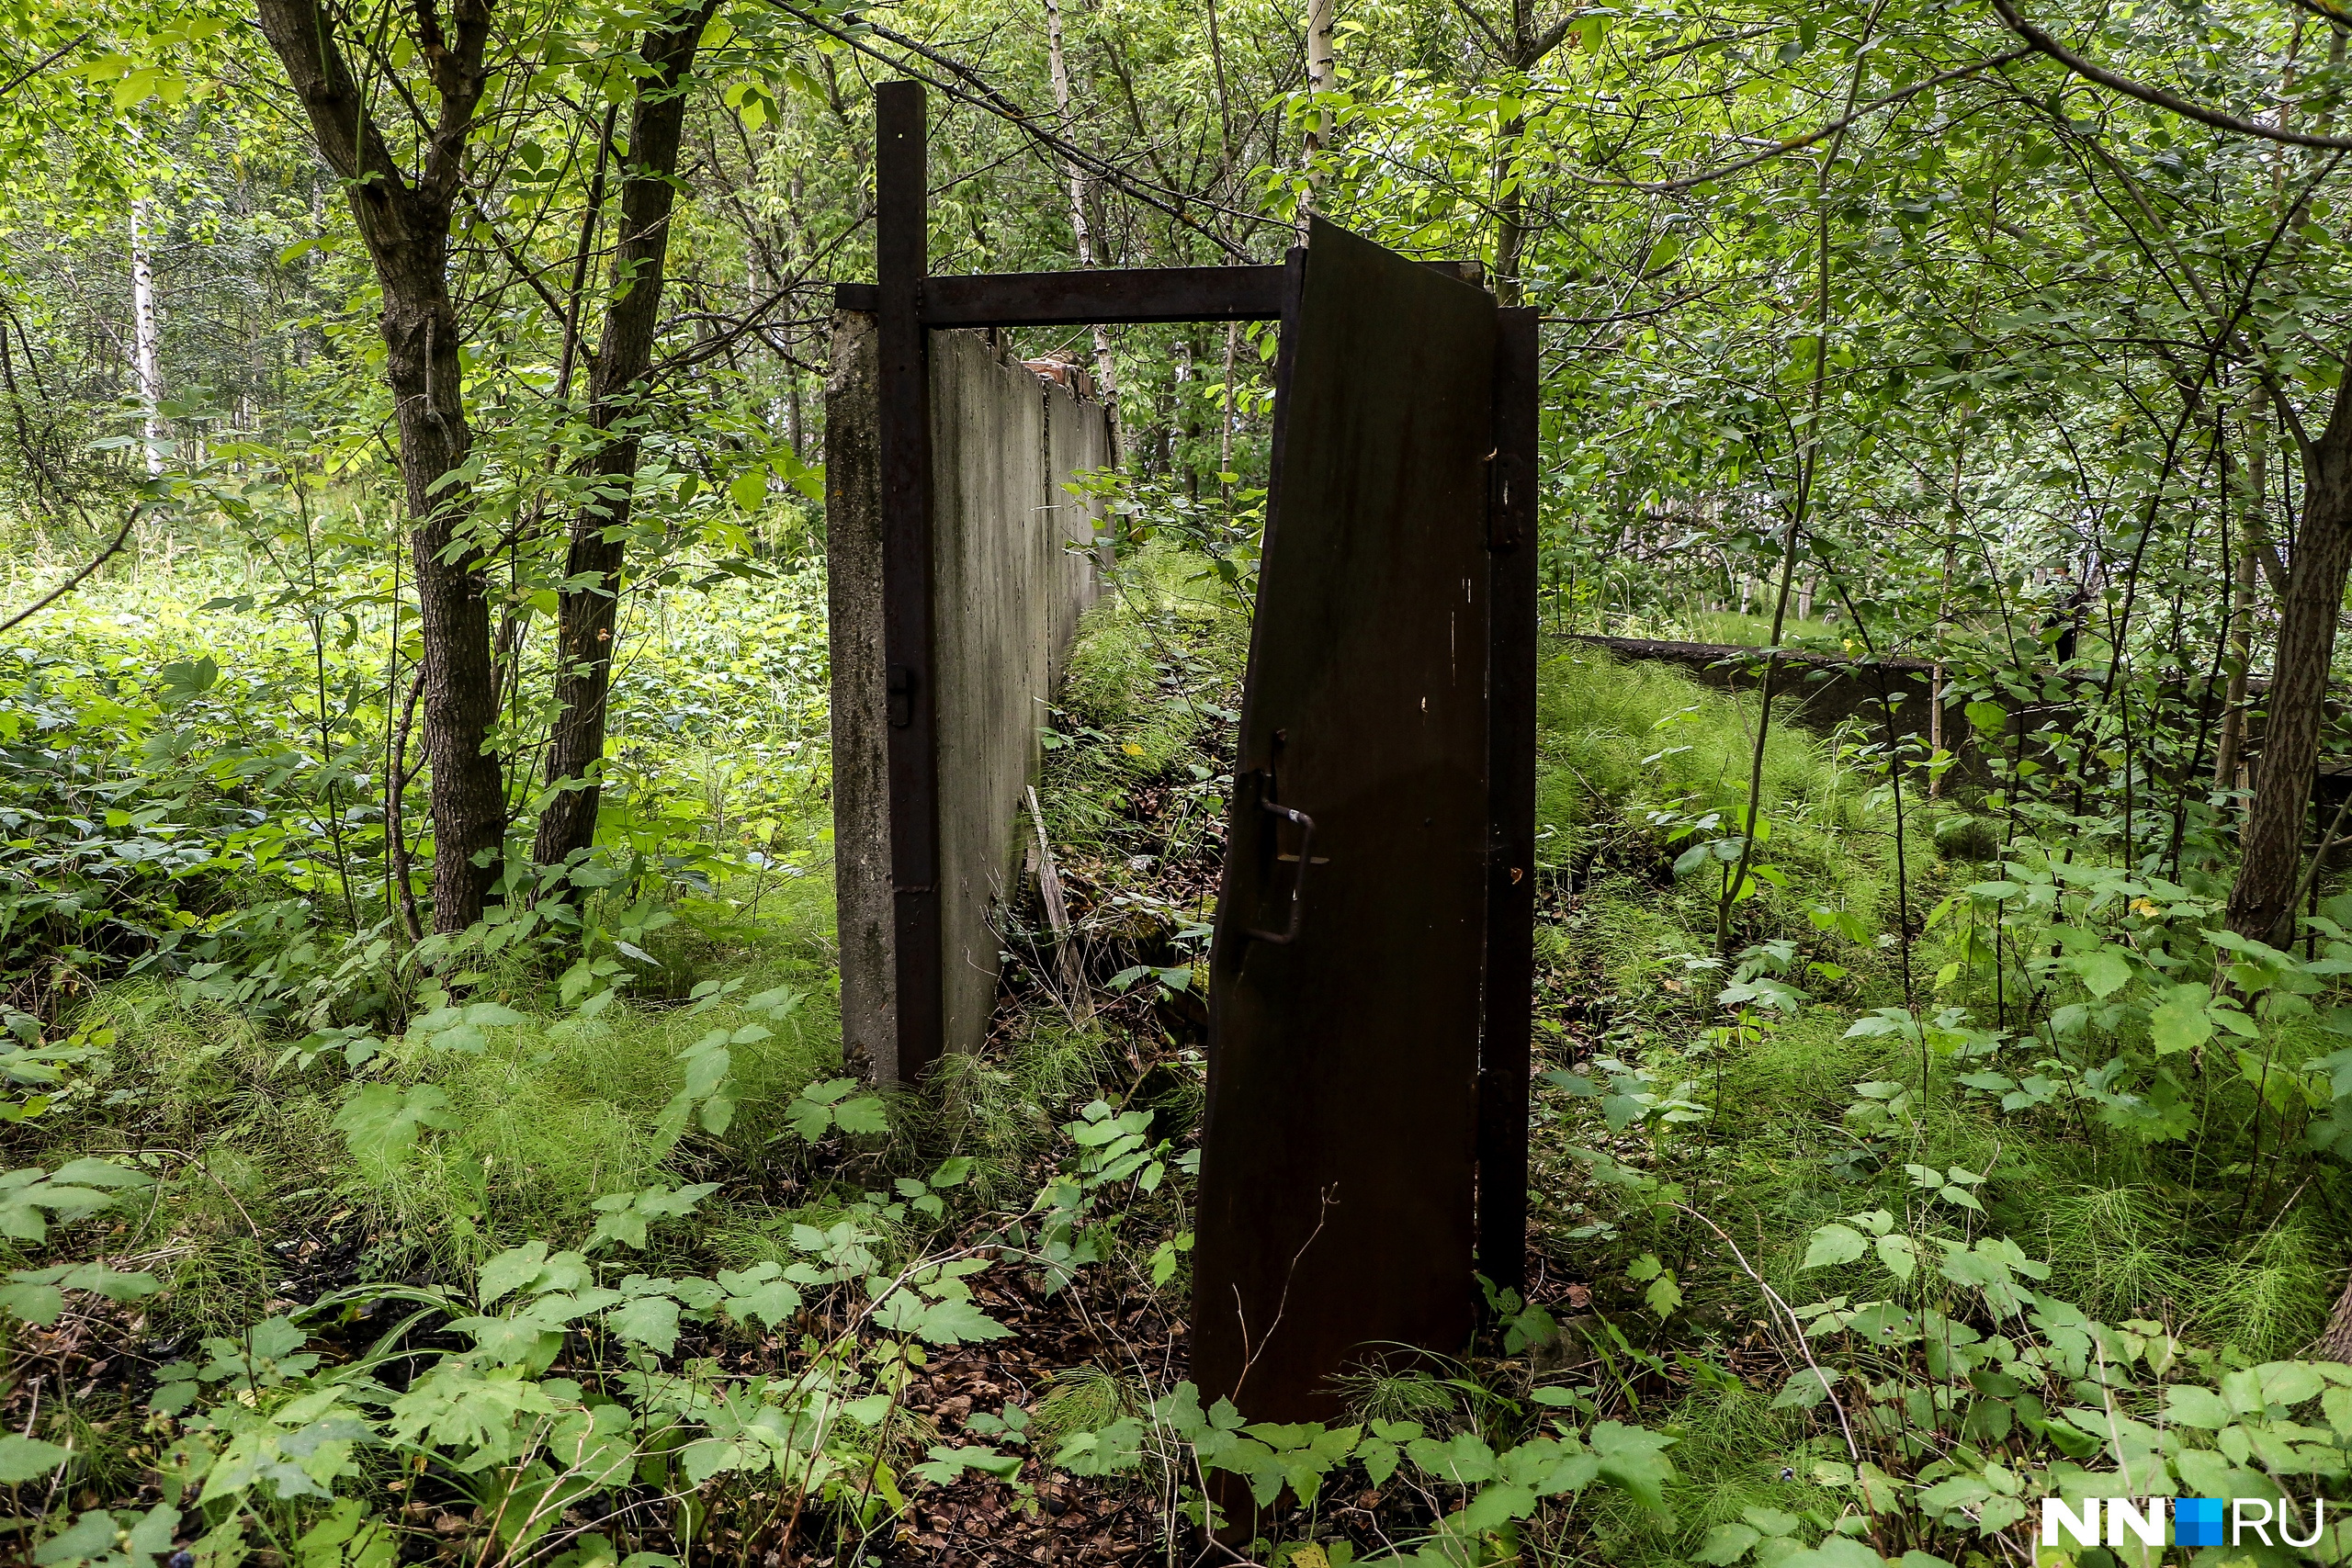 Дверь, стоящая посреди леса, выглядит одновременно эффектно и зловеще<br><br>